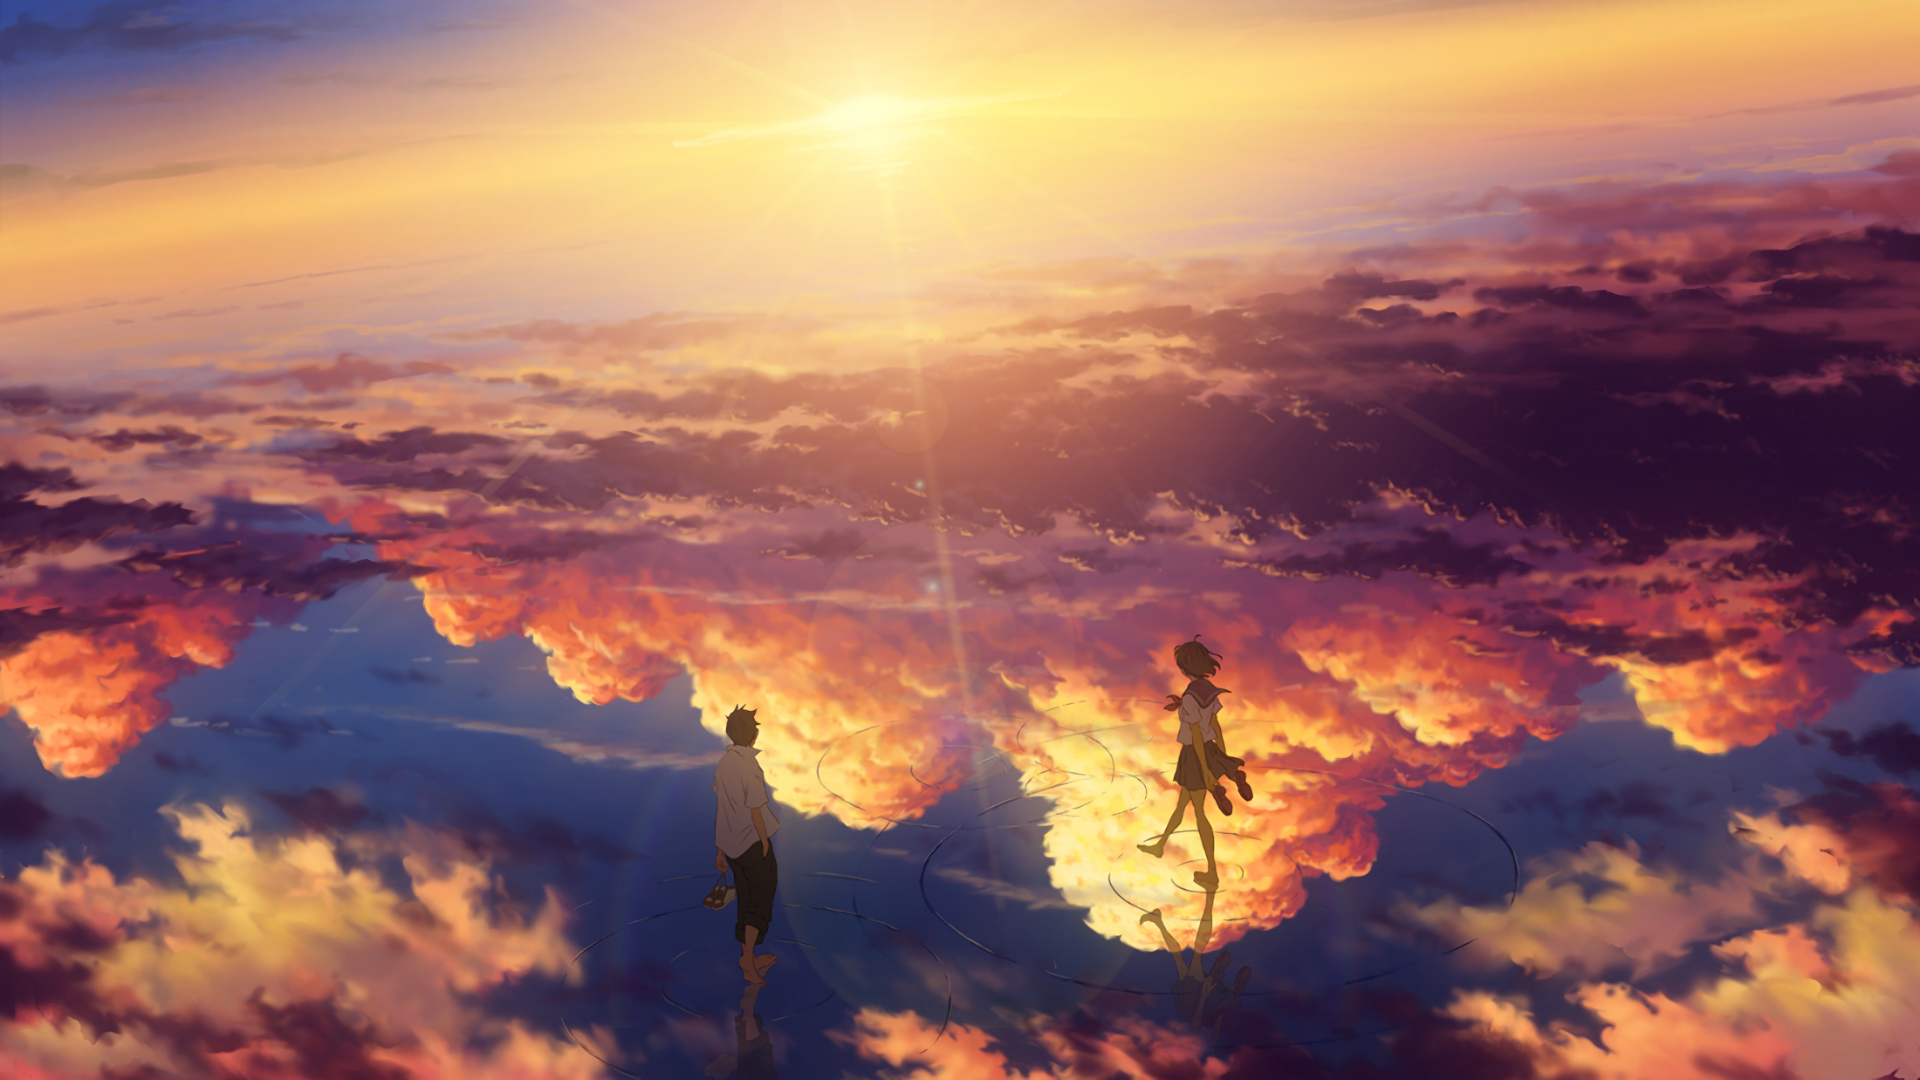 アニメ風景の壁紙,空,熱,雰囲気,雲,イブニング